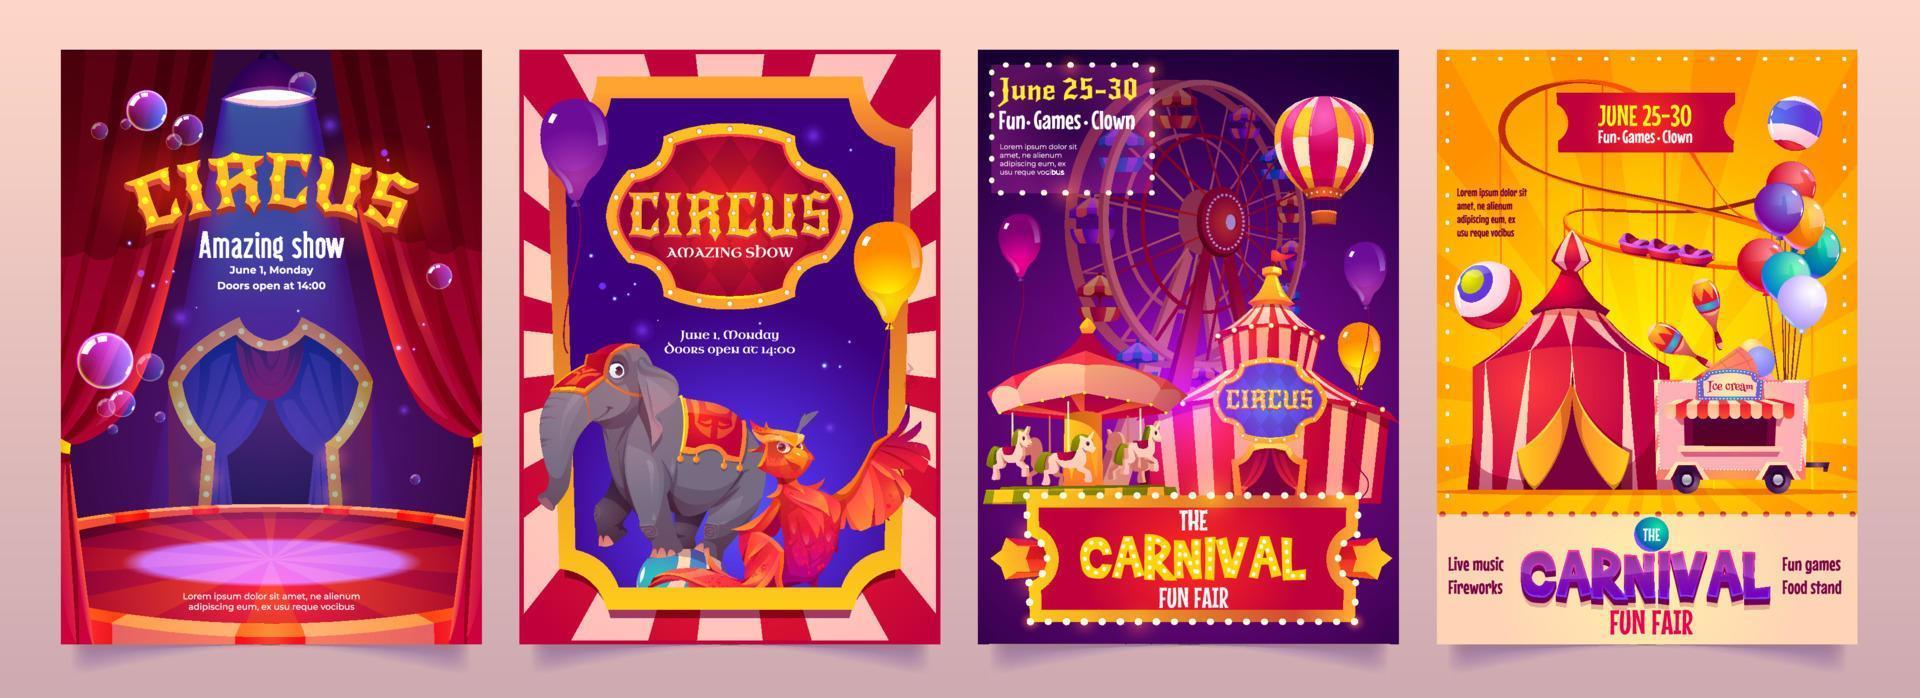 Zirkusshow-Banner, Karnevalsflyer mit großen Zelten vektor